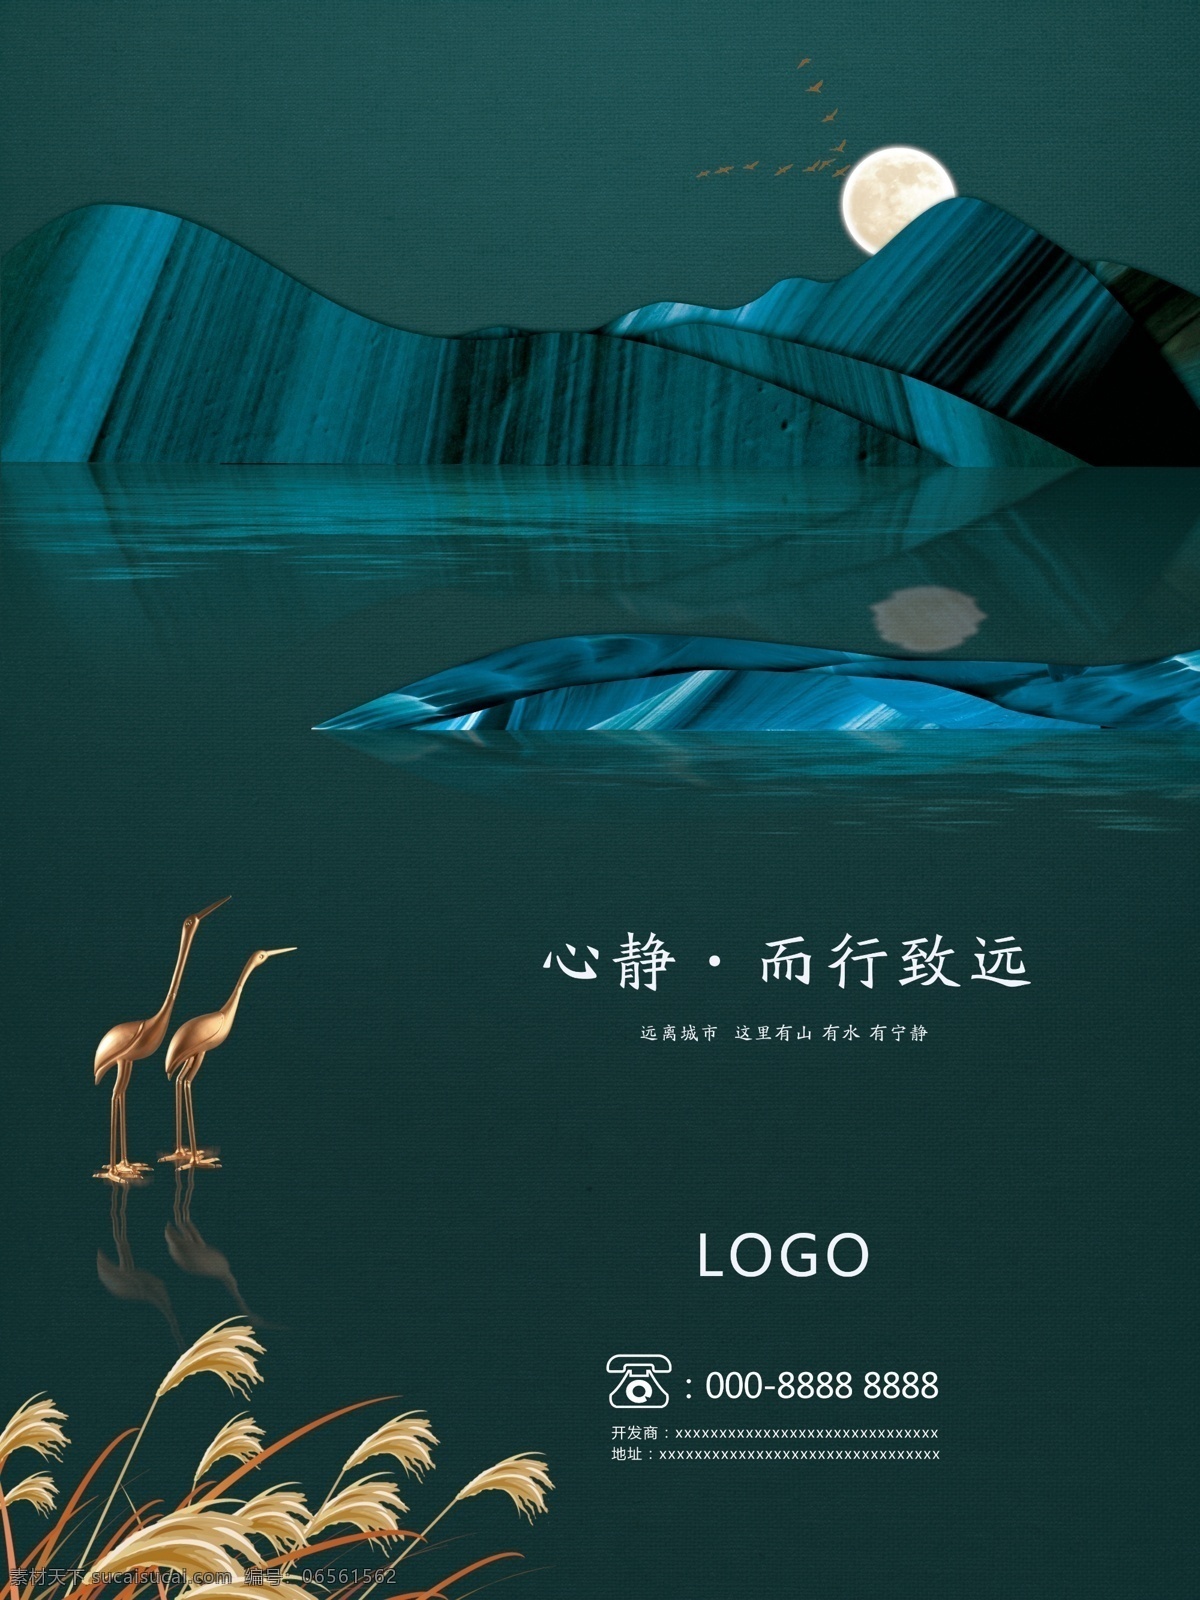 平面 广告创意 版式 蓝绿色 高端 地产 海报 别墅 大气 山 水 仙鹤 月亮 中国风